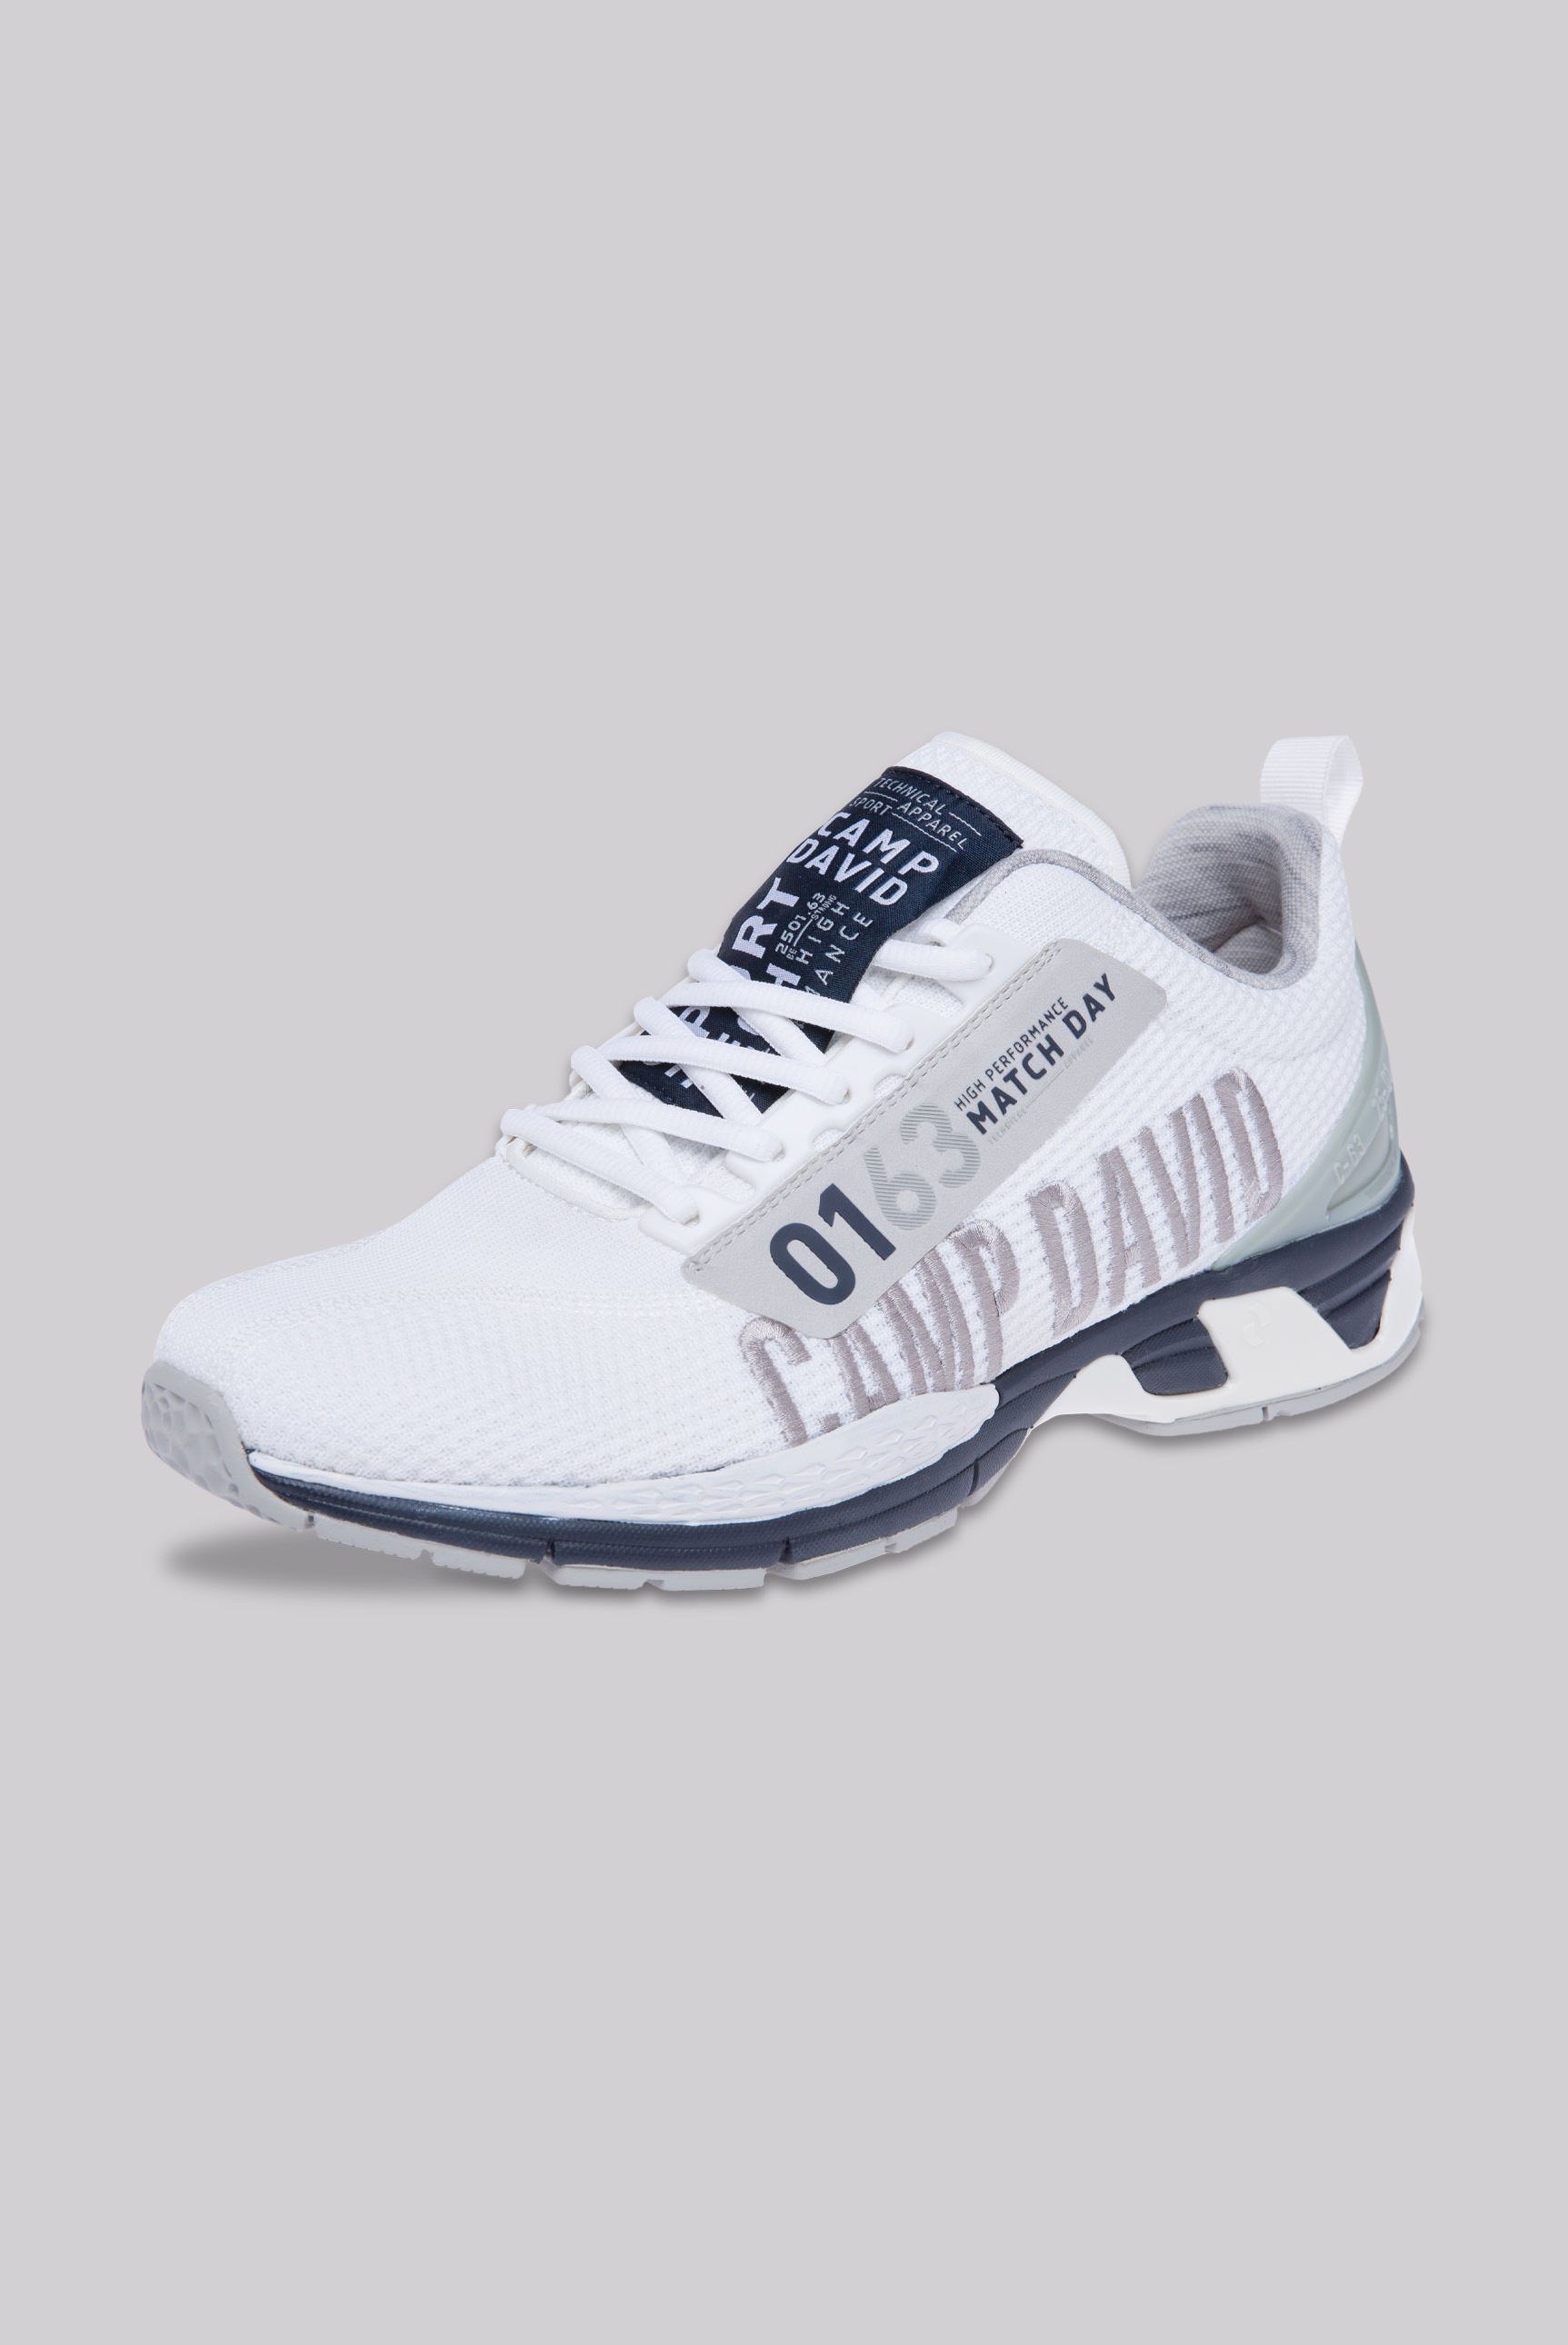 CAMP DAVID Sneaker mit Wechselfußbett, Gepolsteter Einstieg online kaufen |  OTTO